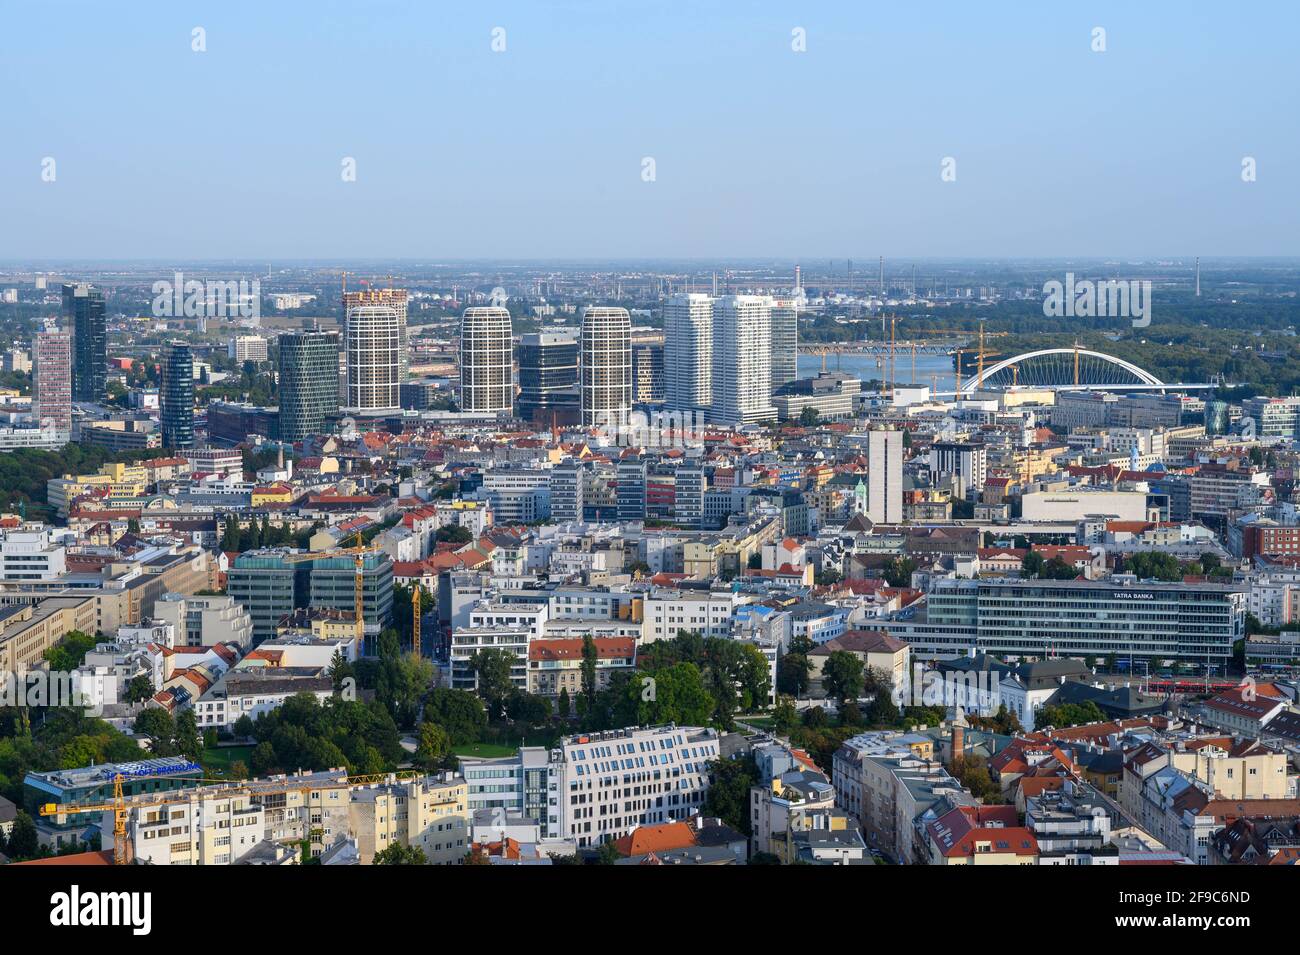 Il paesaggio urbano di Bratislava (Slovacchia) visto dal monumento Slavín. Foto Stock